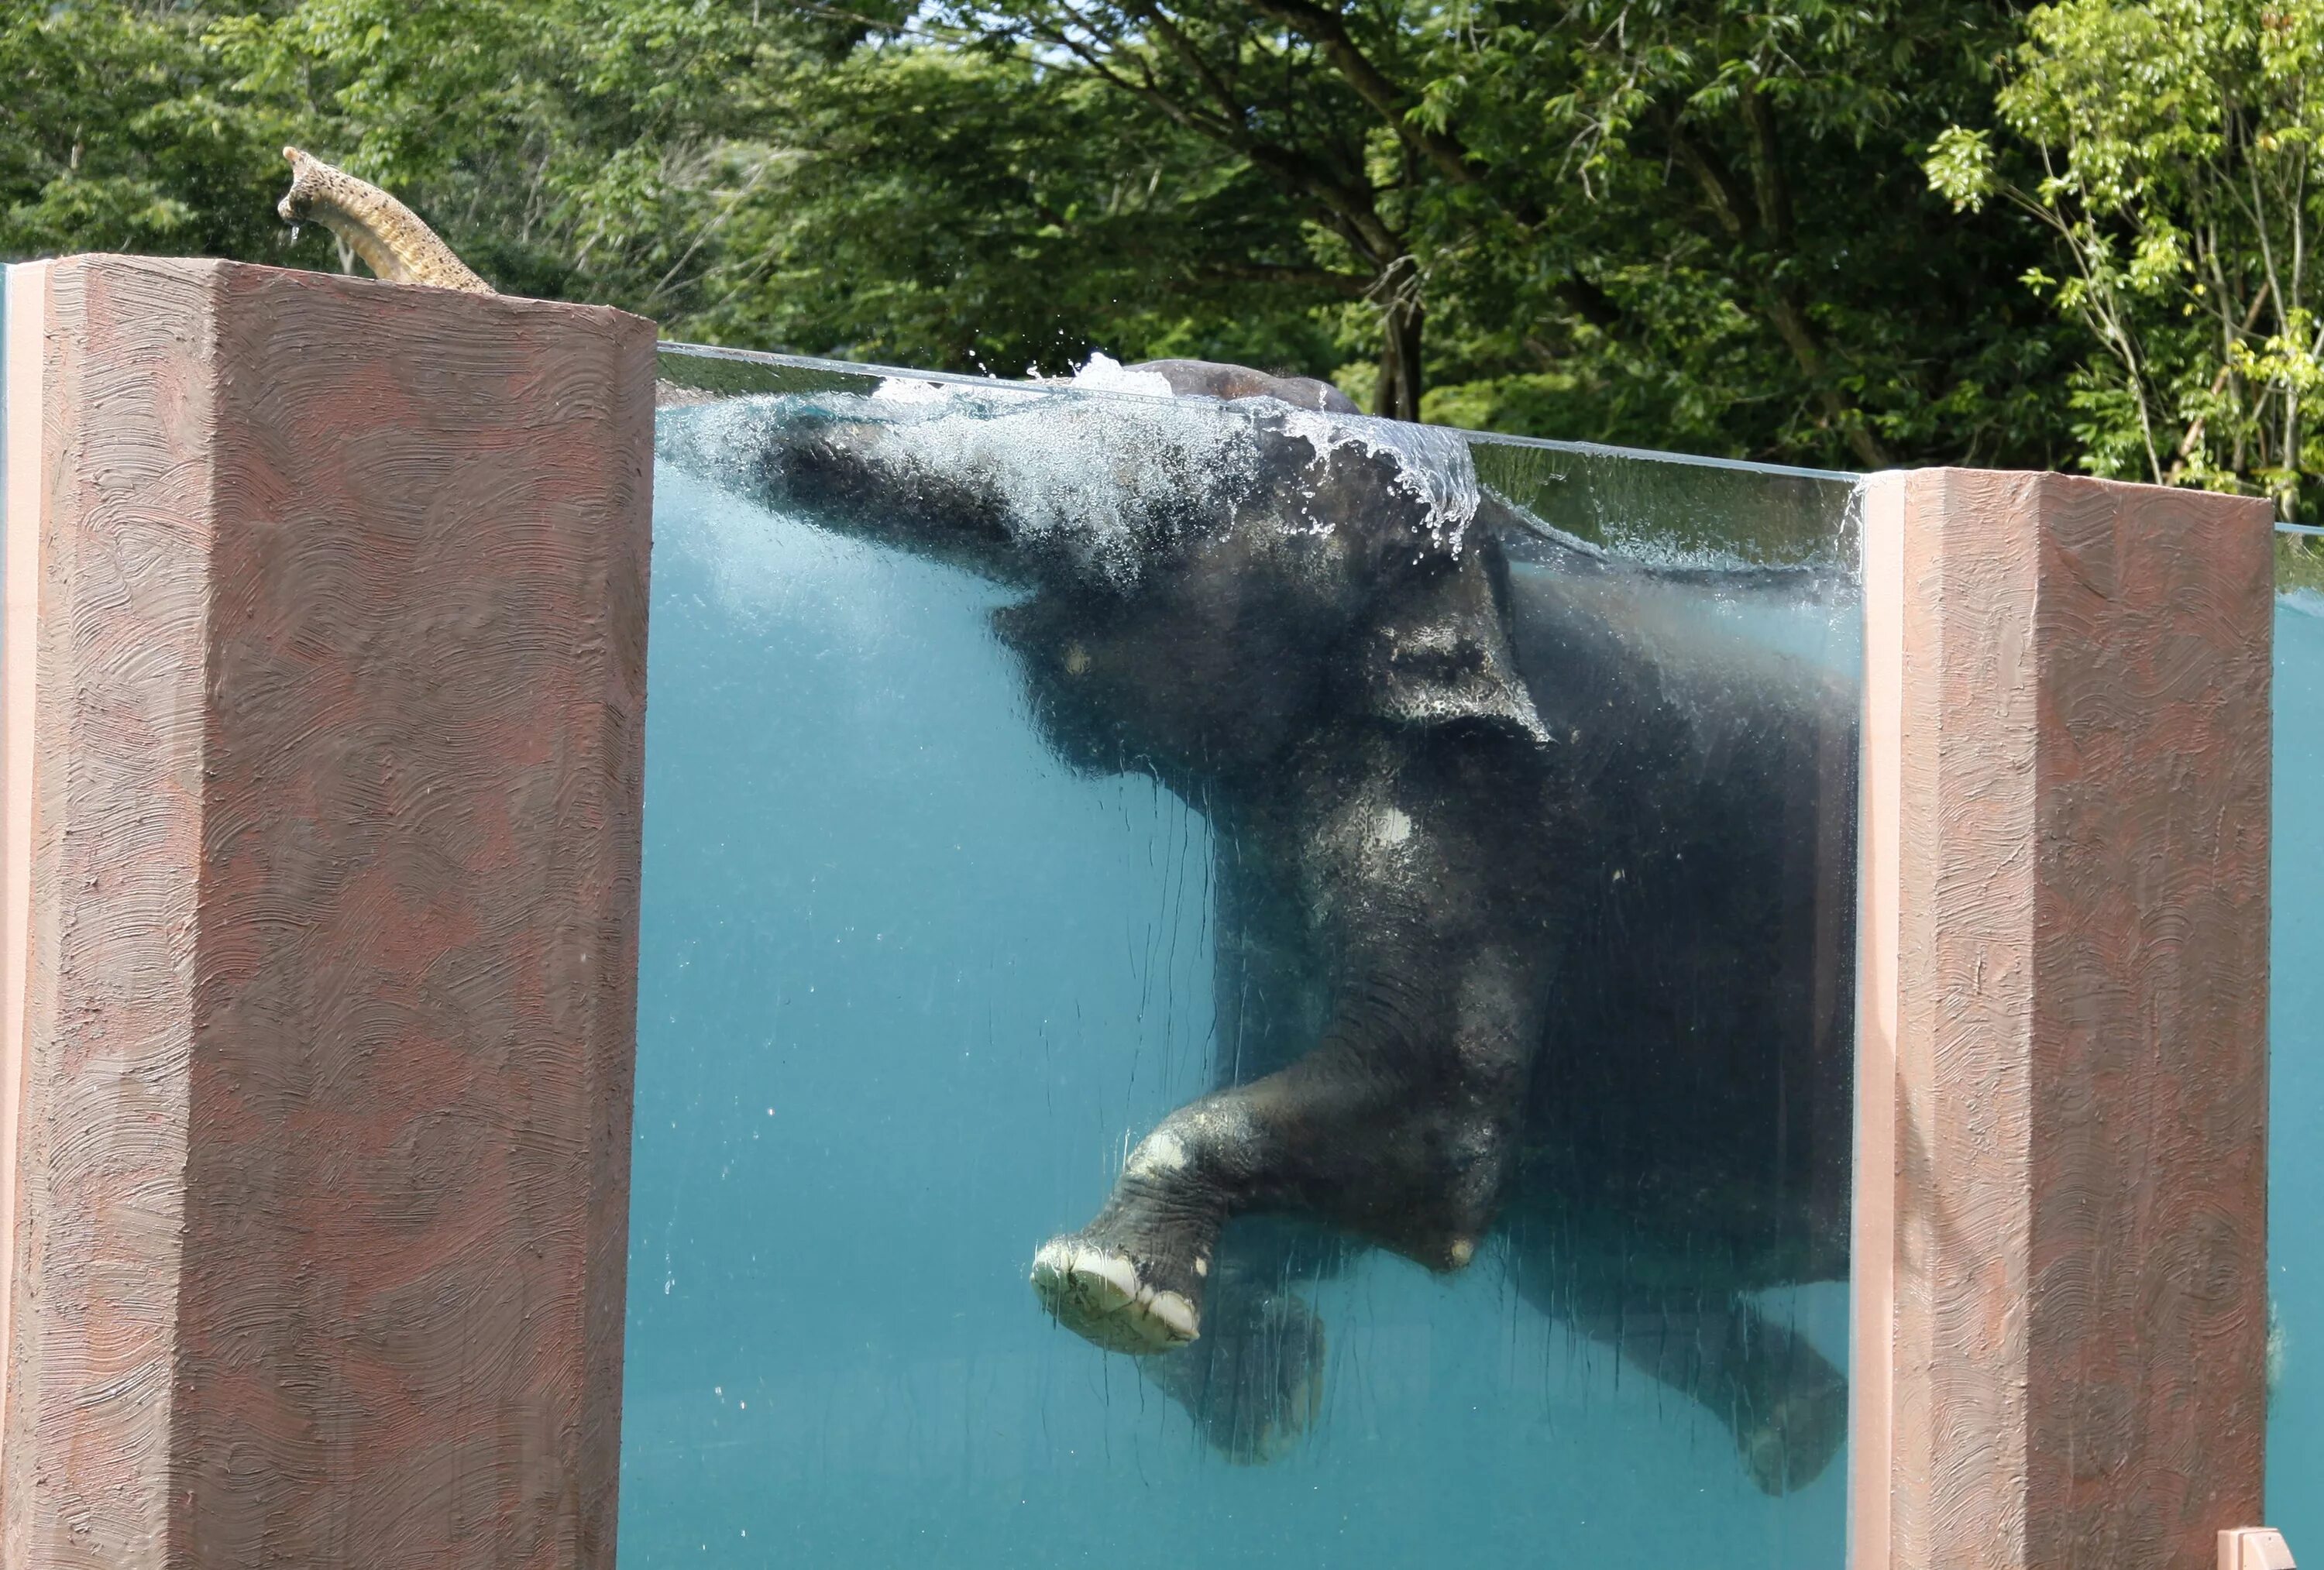 Elephant swim. Слоник в бассейне. Бассейн для слонов. Слоны у бассейна. Слон плавает.